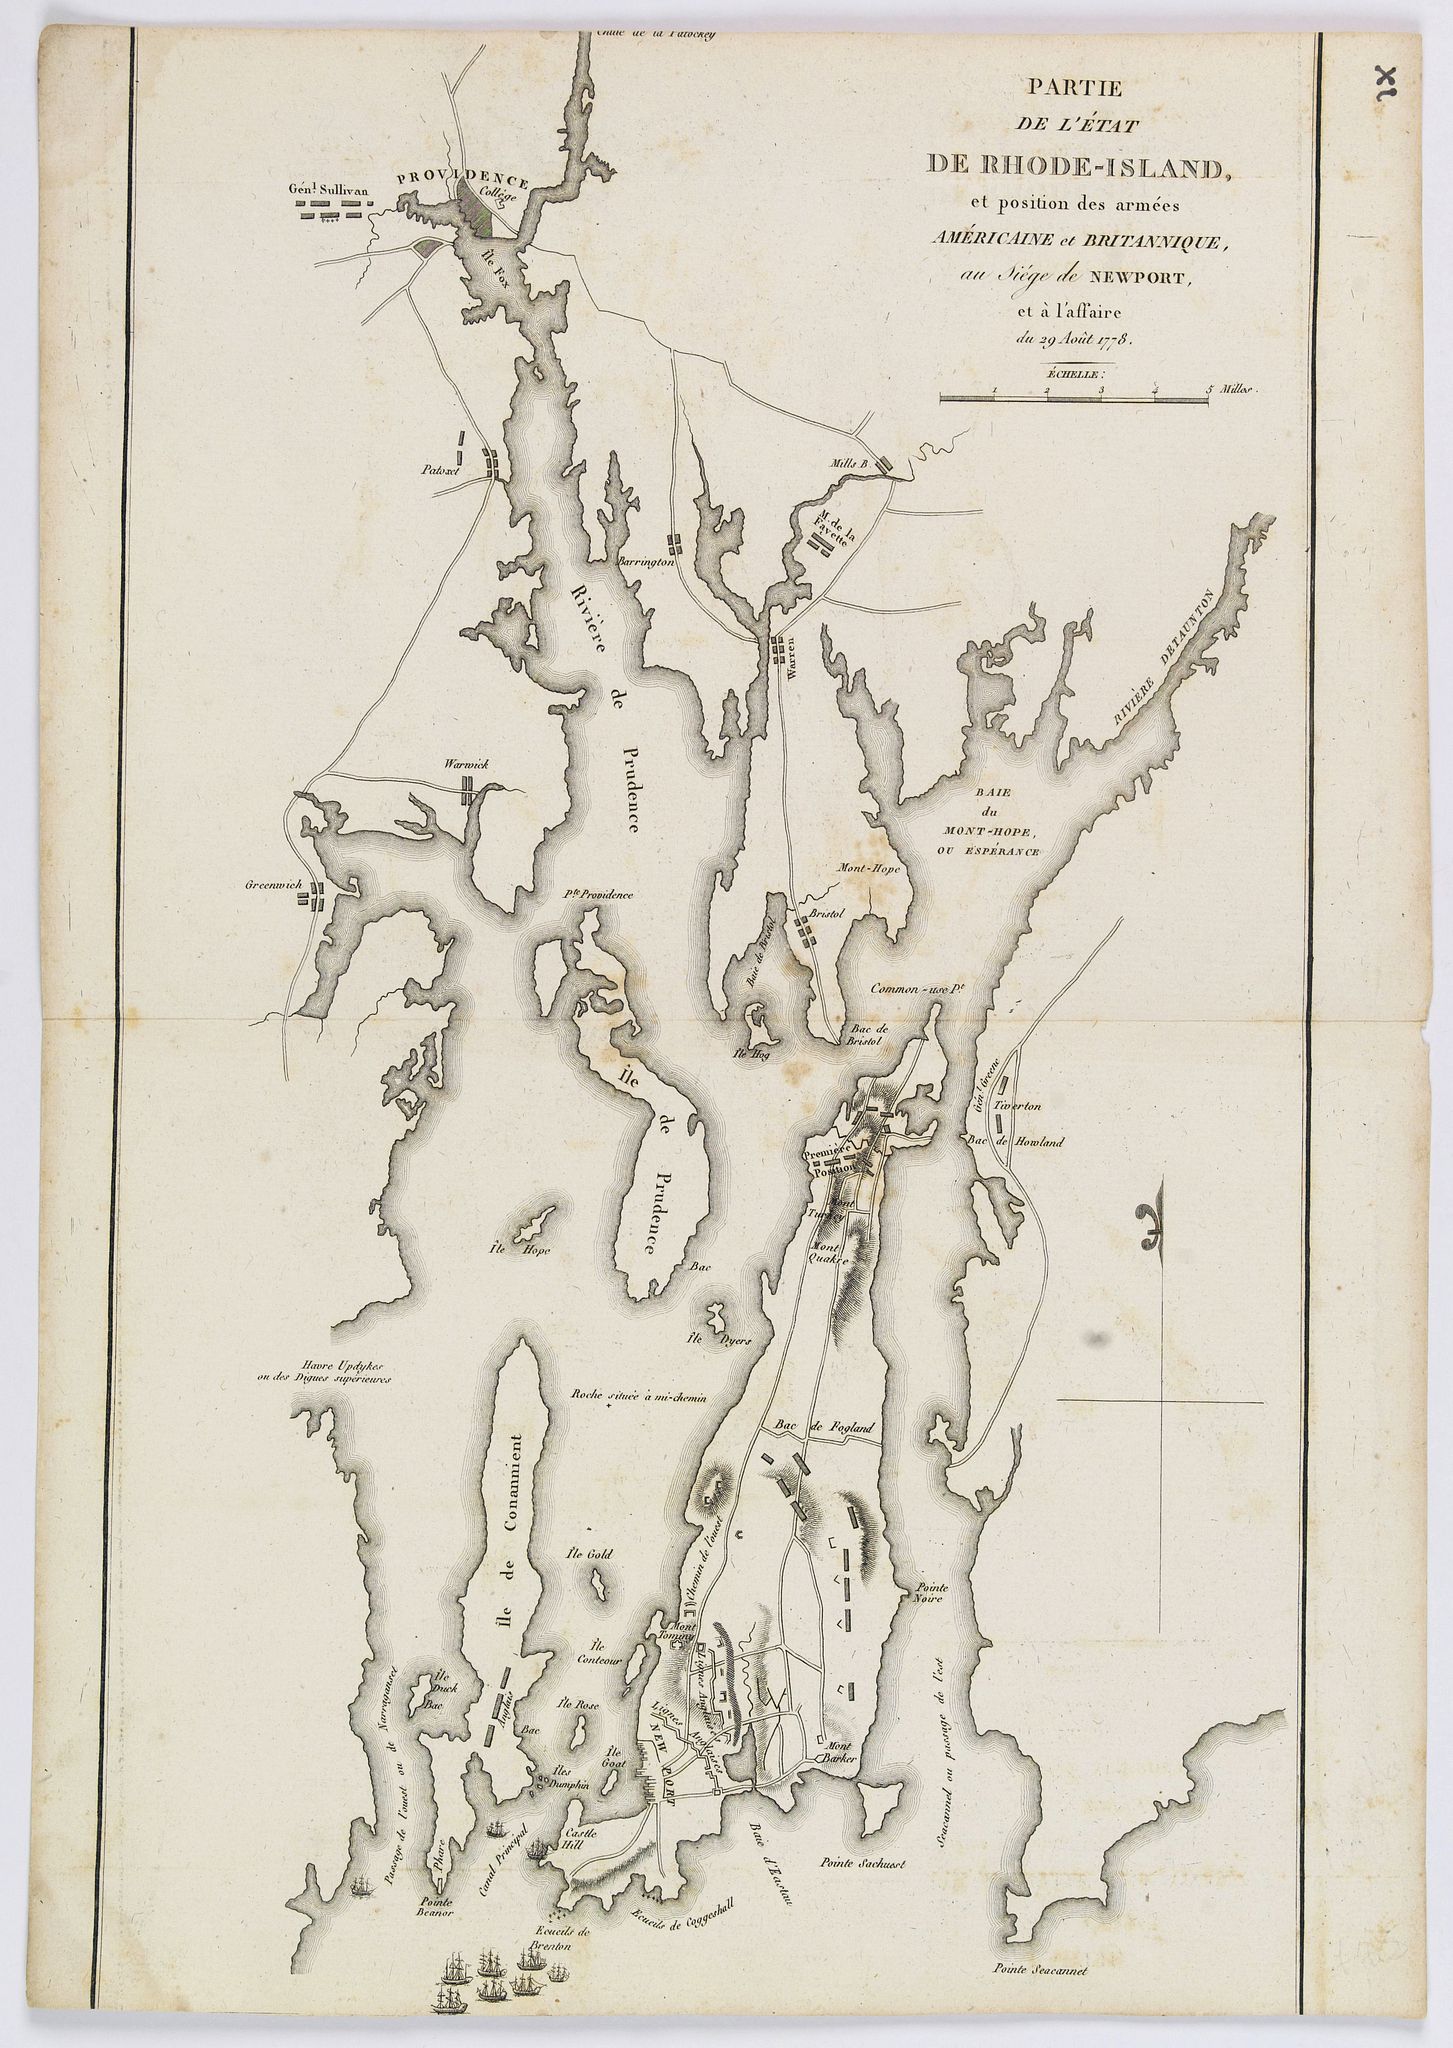 Partie de l'Etat de Rhode-Island, et Position des Armees Americaine et Britannique, au Siege de Newport, et a l'Affaire du 29 Aout 1778